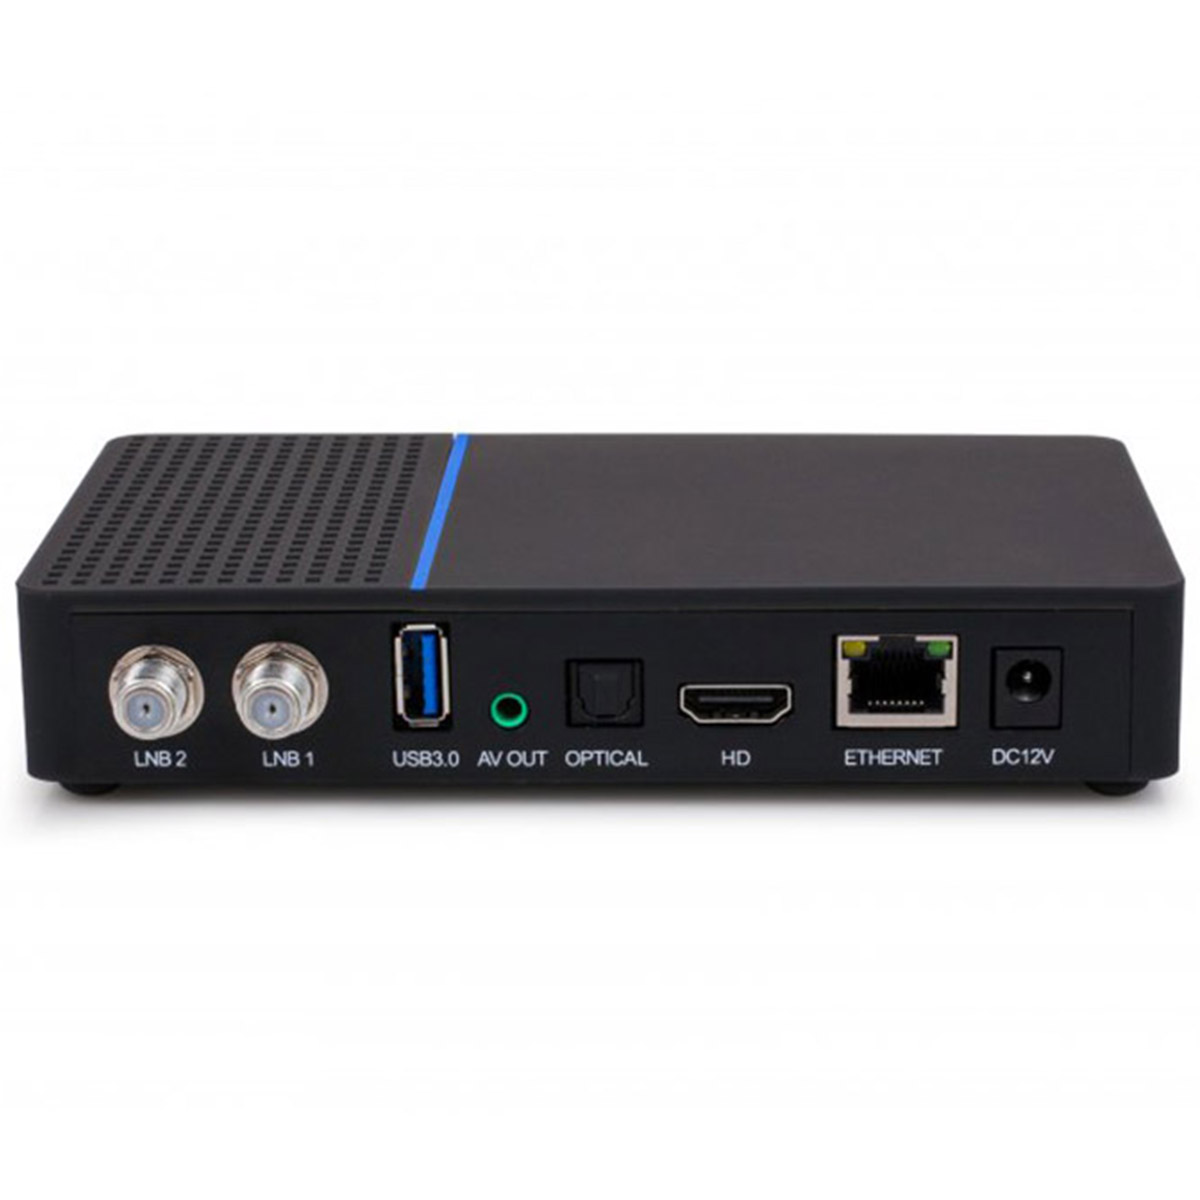 Anadol Multibox Twin SE 4K UHD Linux E2 Sat-Receiver (2x DVB-S2, WiFi, LAN, HDR10, HDMI)